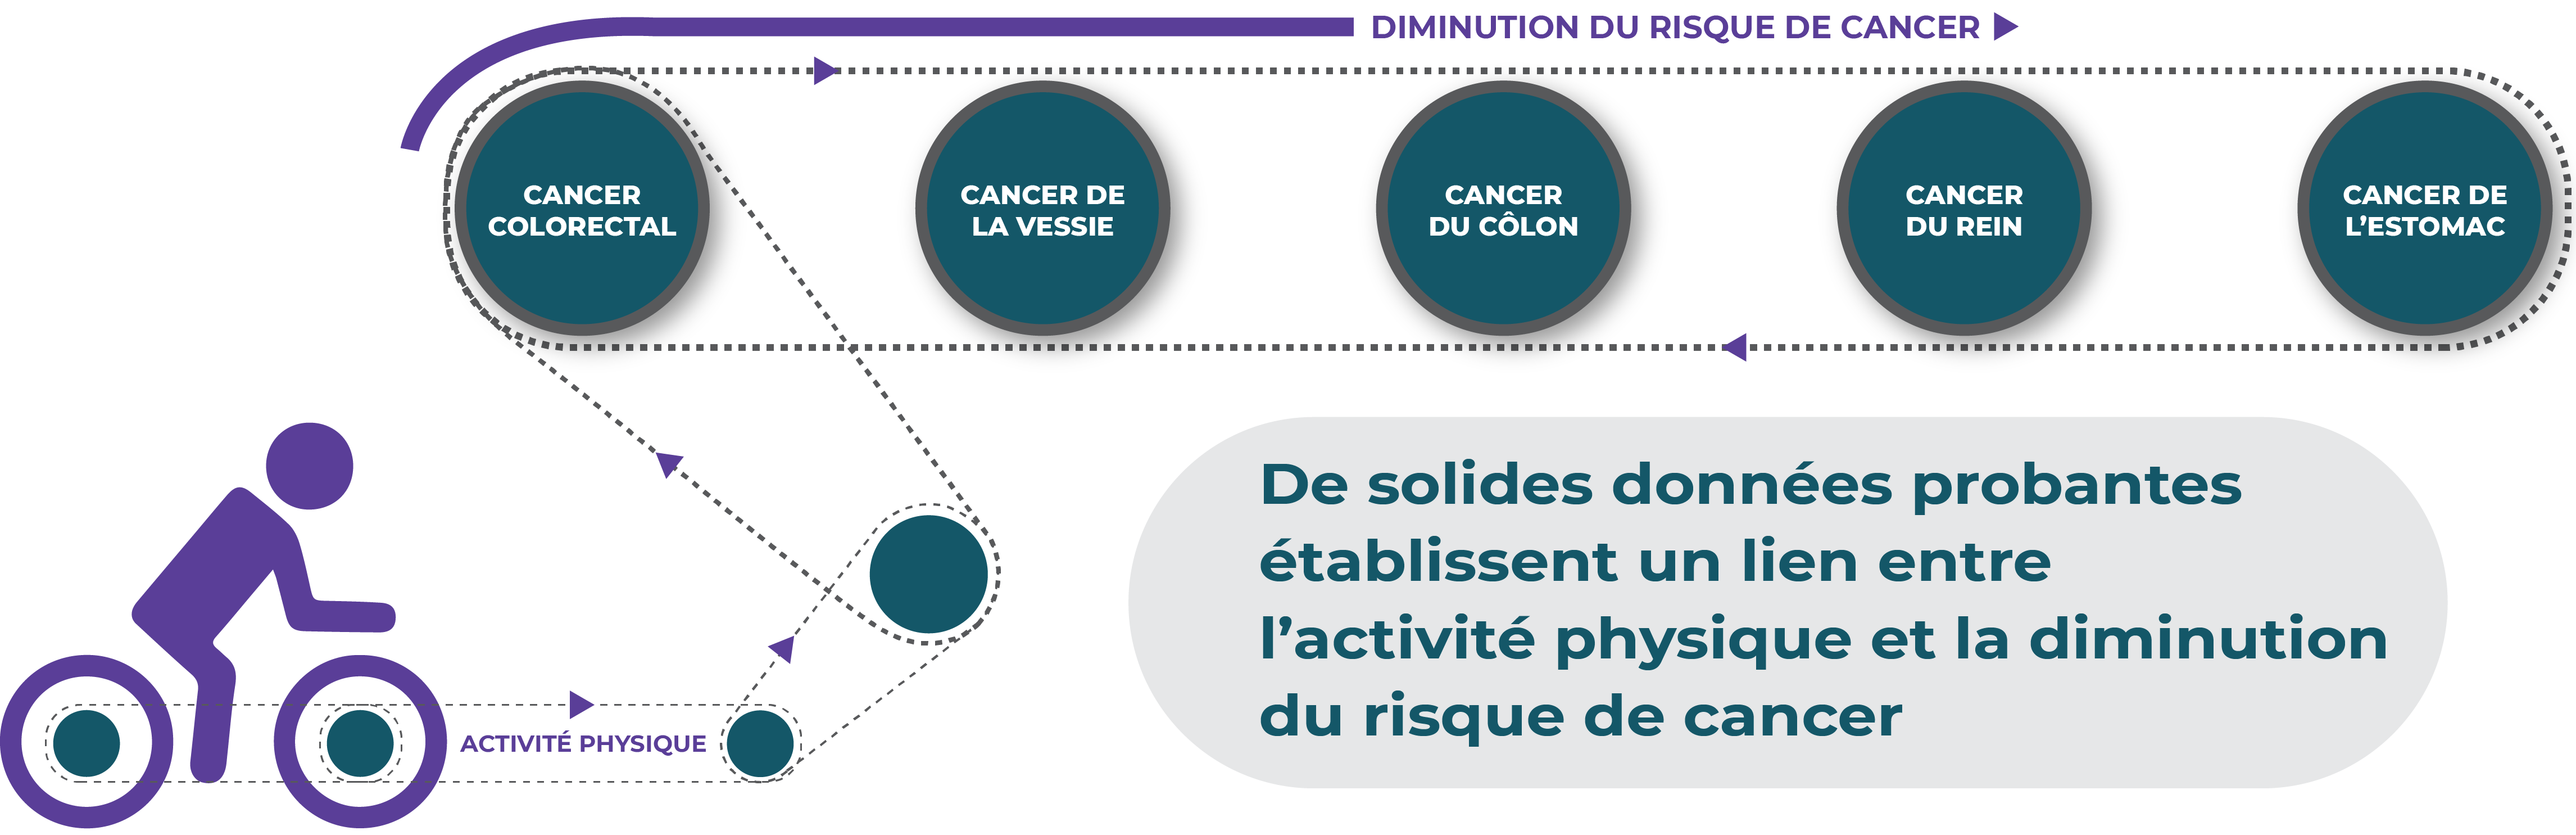 De solides données probantes établissent un lien entre l'activité physique et la diminution du risque du cancer